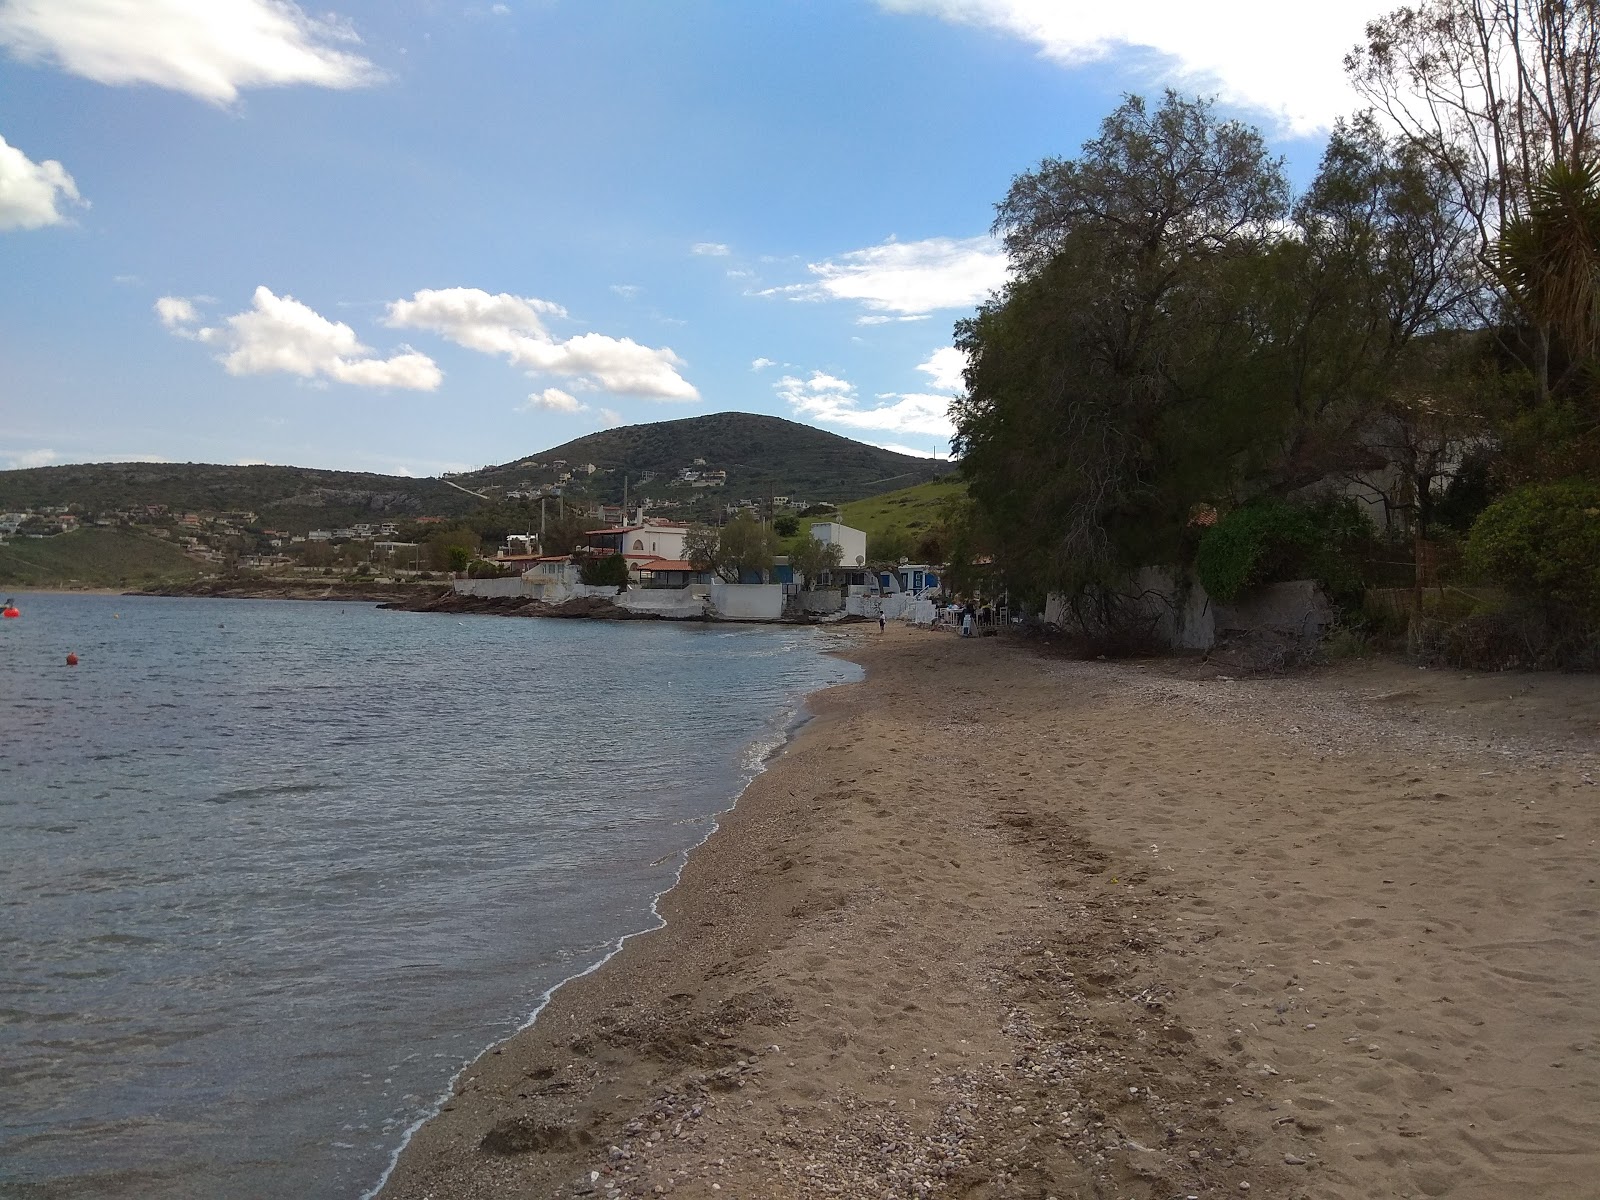 Fotografie cu Daskalio beach cu o suprafață de apă verde deschis